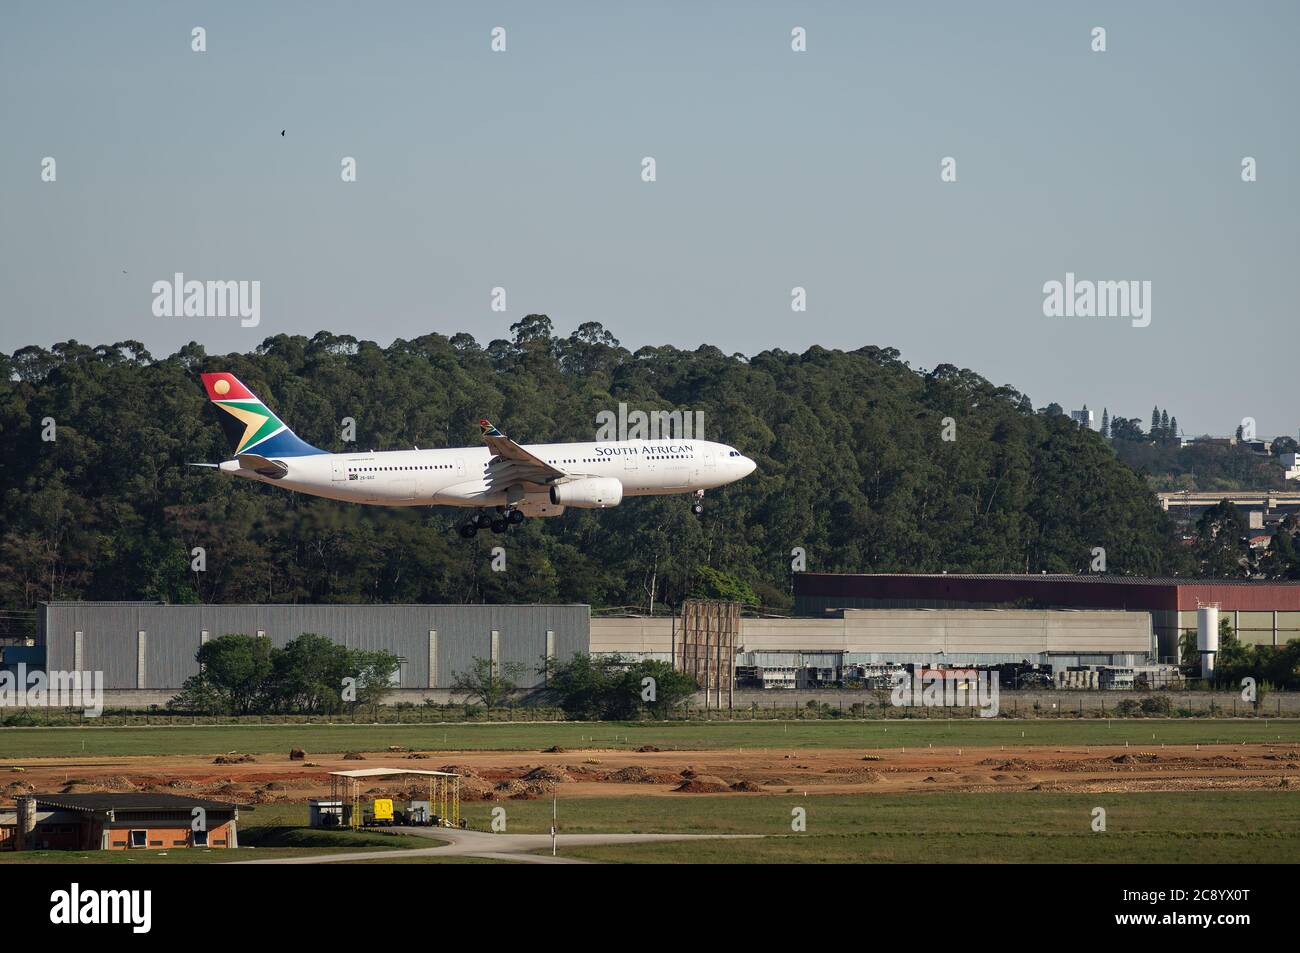 South African Airways Airbus A330-243 (Charlotte Maxeke - ZS-SXZ) im kurzen Finale vor dem Berühren der Start- und Landebahn 27L von Sao Paulo/Guarulhos Intl. Flughafen. Stockfoto